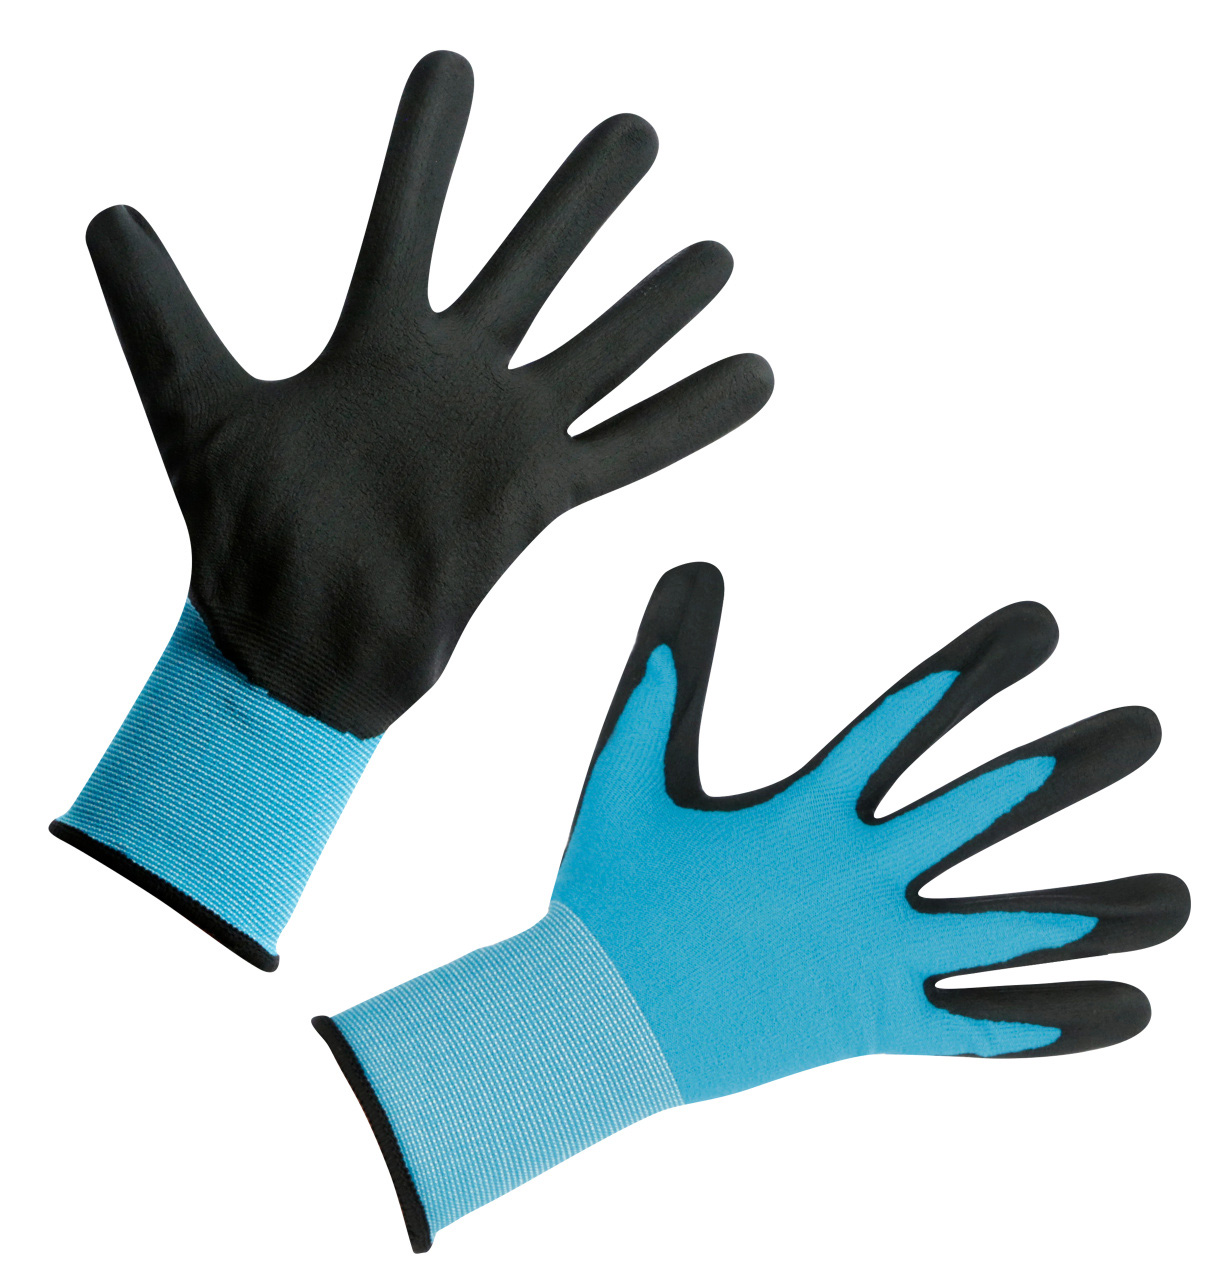 Keron Handschuh EasyTouch für Montage und Arbeit